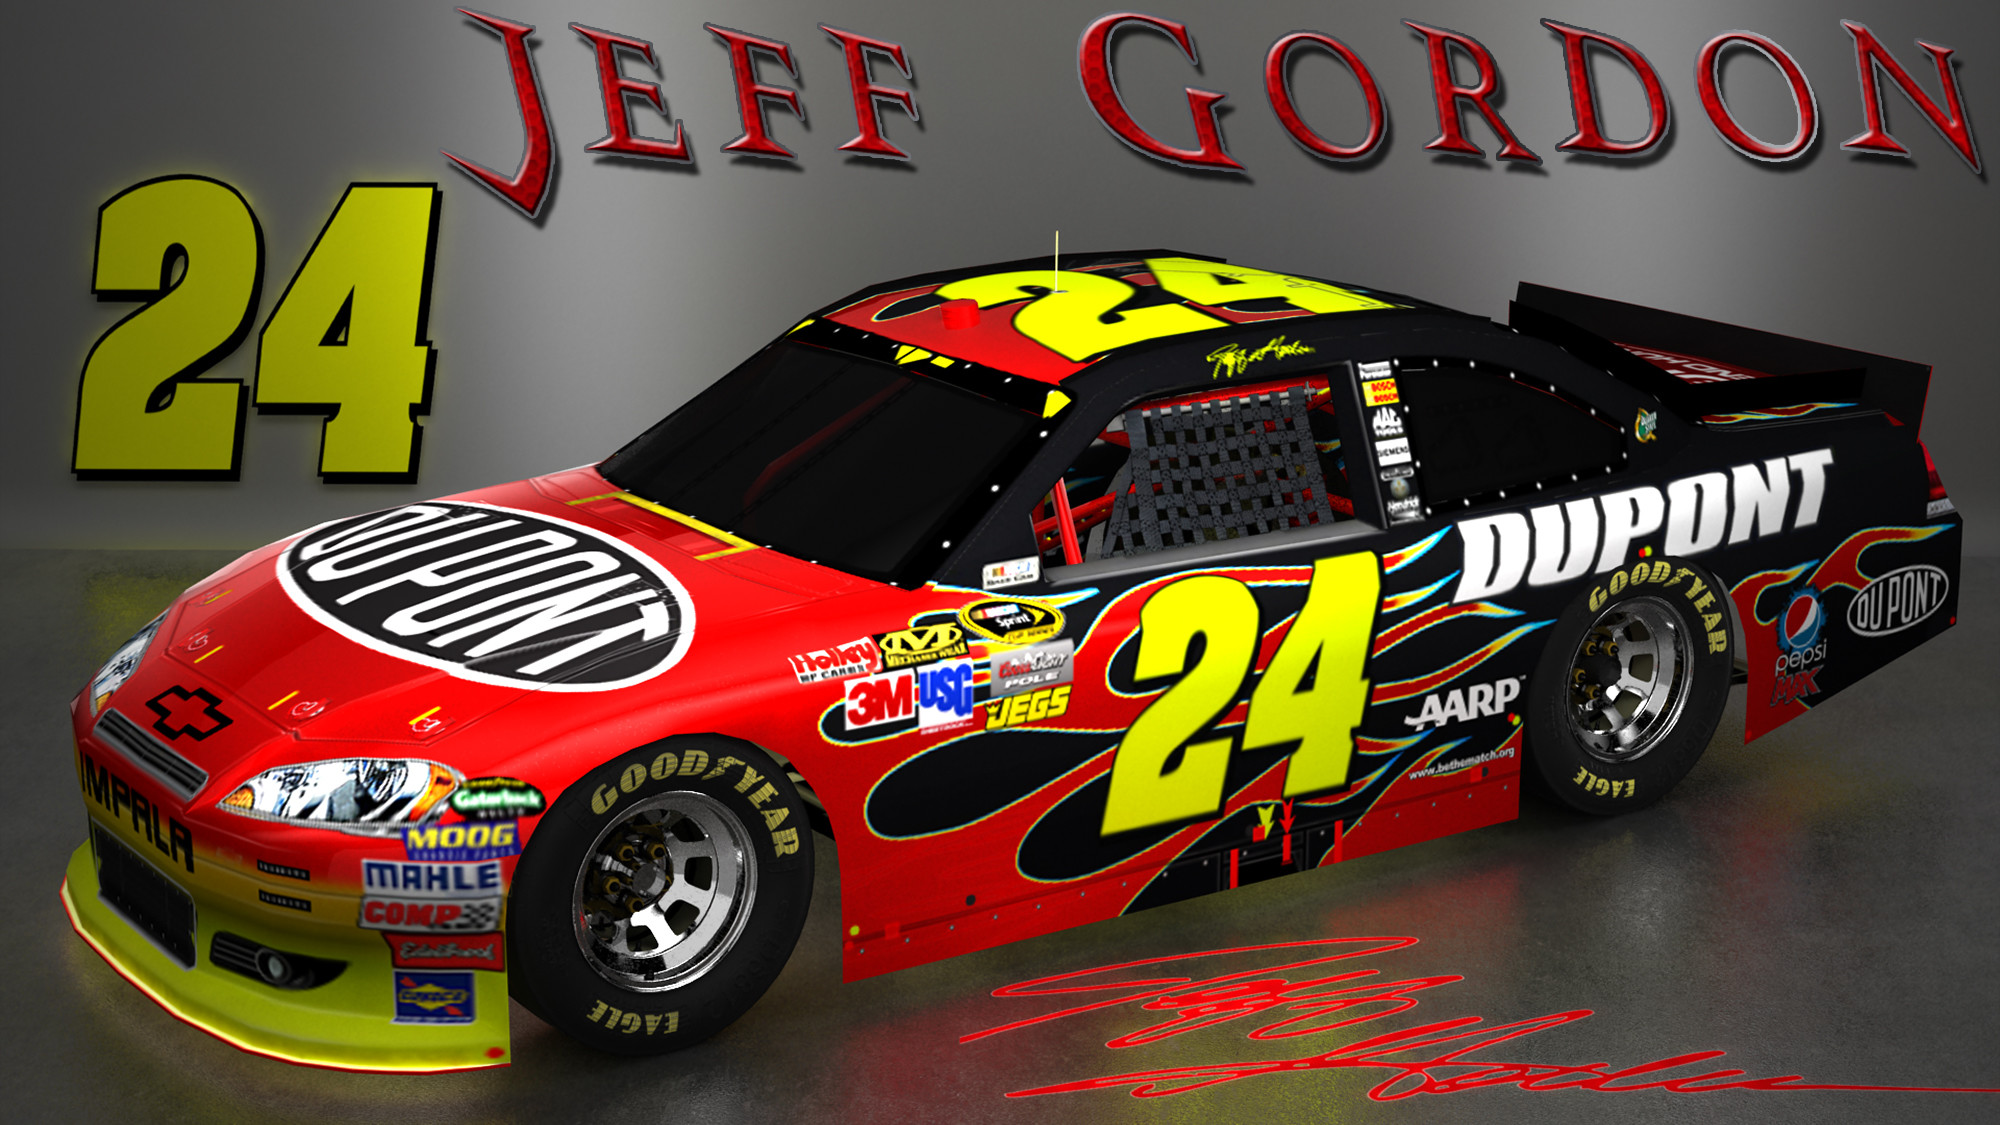 2000x1125 Jeff Gordon | jeff gordon wallpaper jeff gordon wallpaper jeff gordon hd  wallpaper ... | Jeff Gordon | Pinterest | Jeff gordon